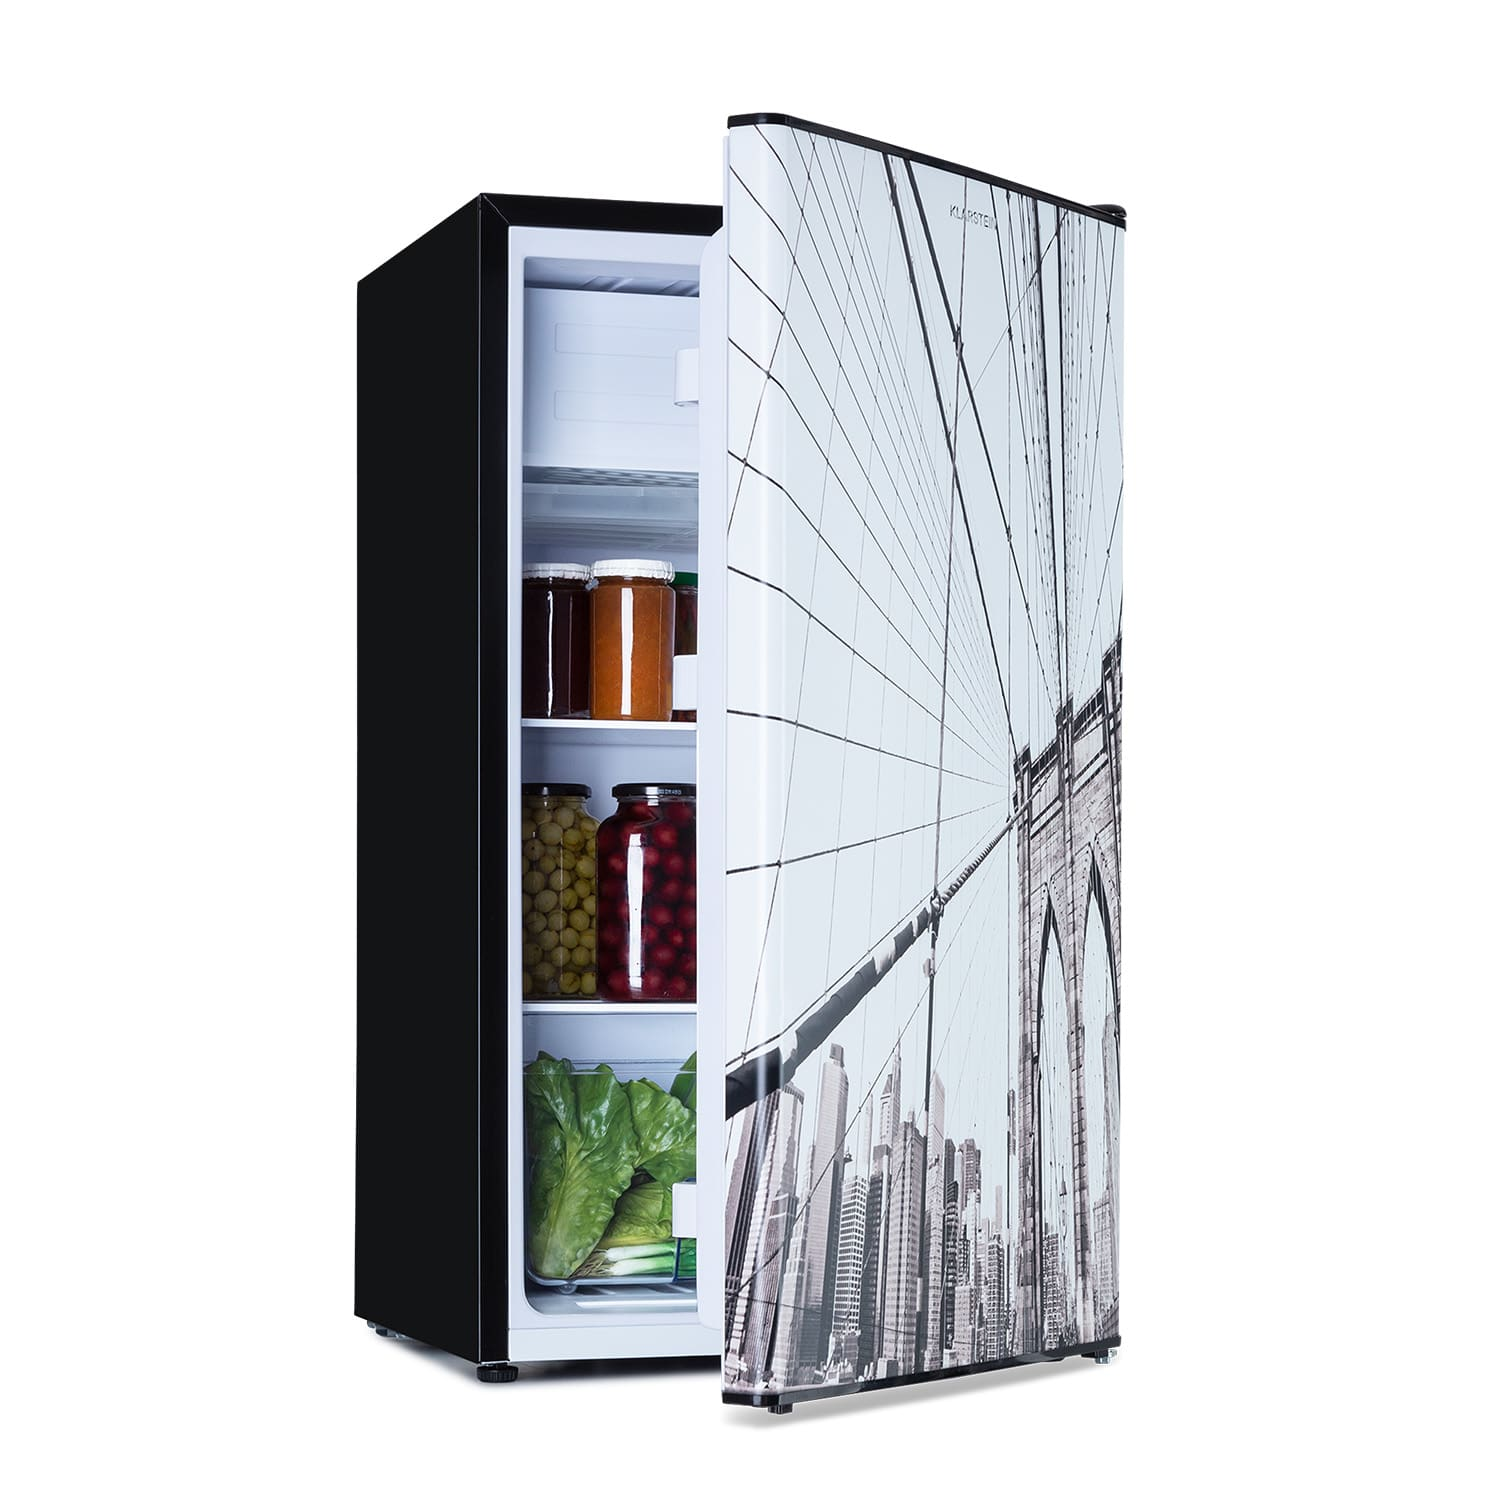 KLARSTEIN CoolArt 79L Mini-Kühlschrank (F, Multicolor) cm 44,5 hoch